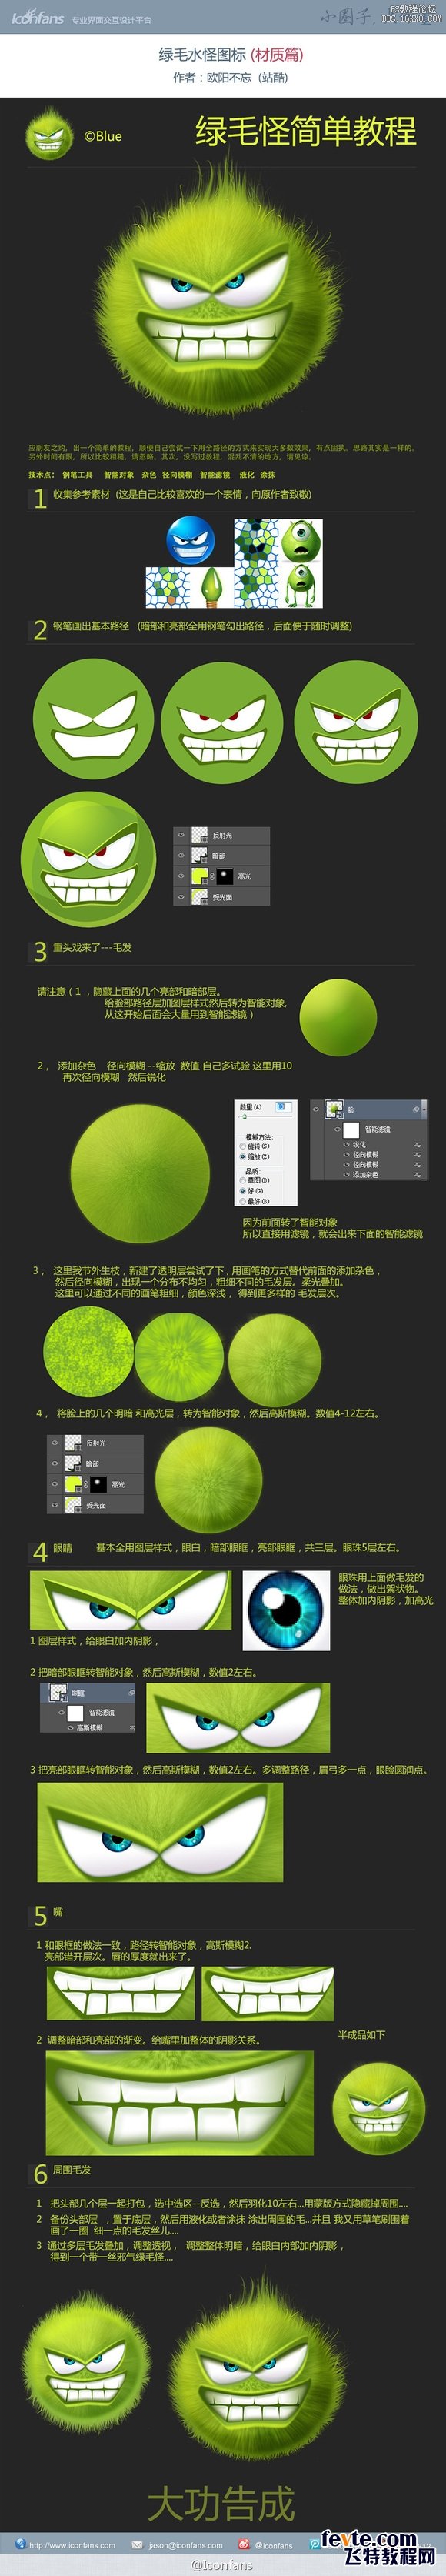 Photoshop设计绿毛怪UI图标教程